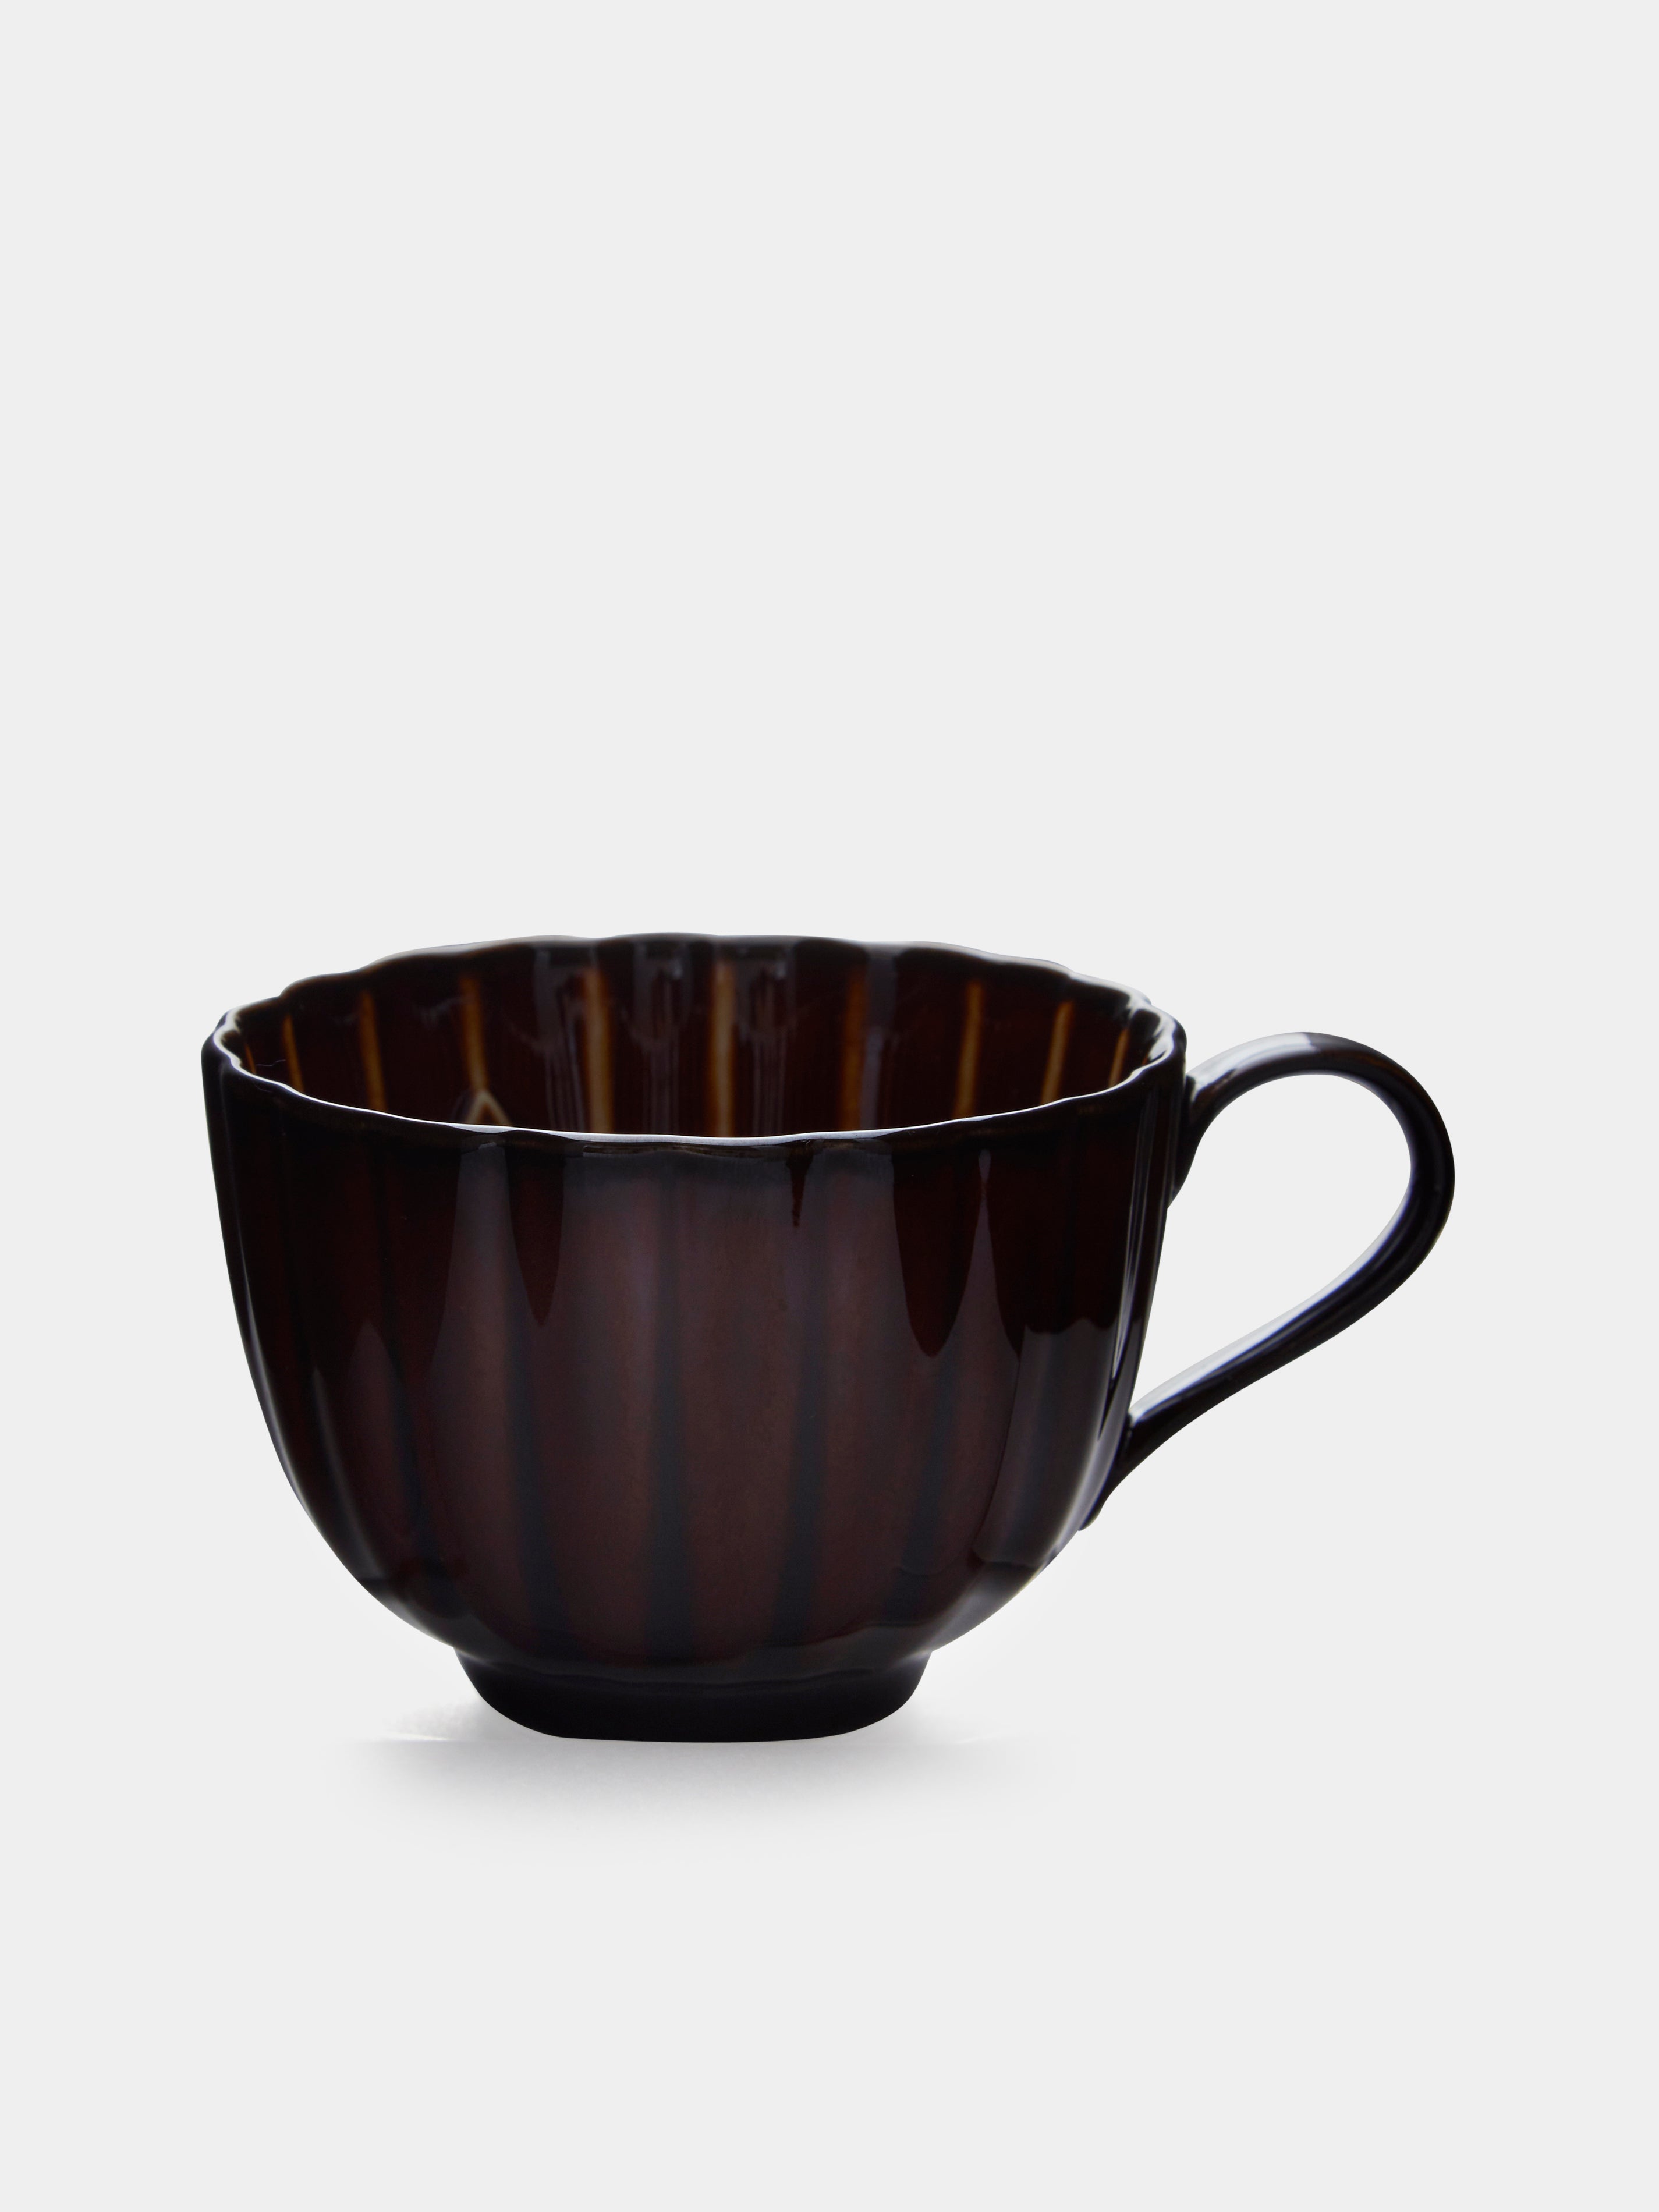 Giyaman Urushi Ceramic Coffee Cups (Set of 4)